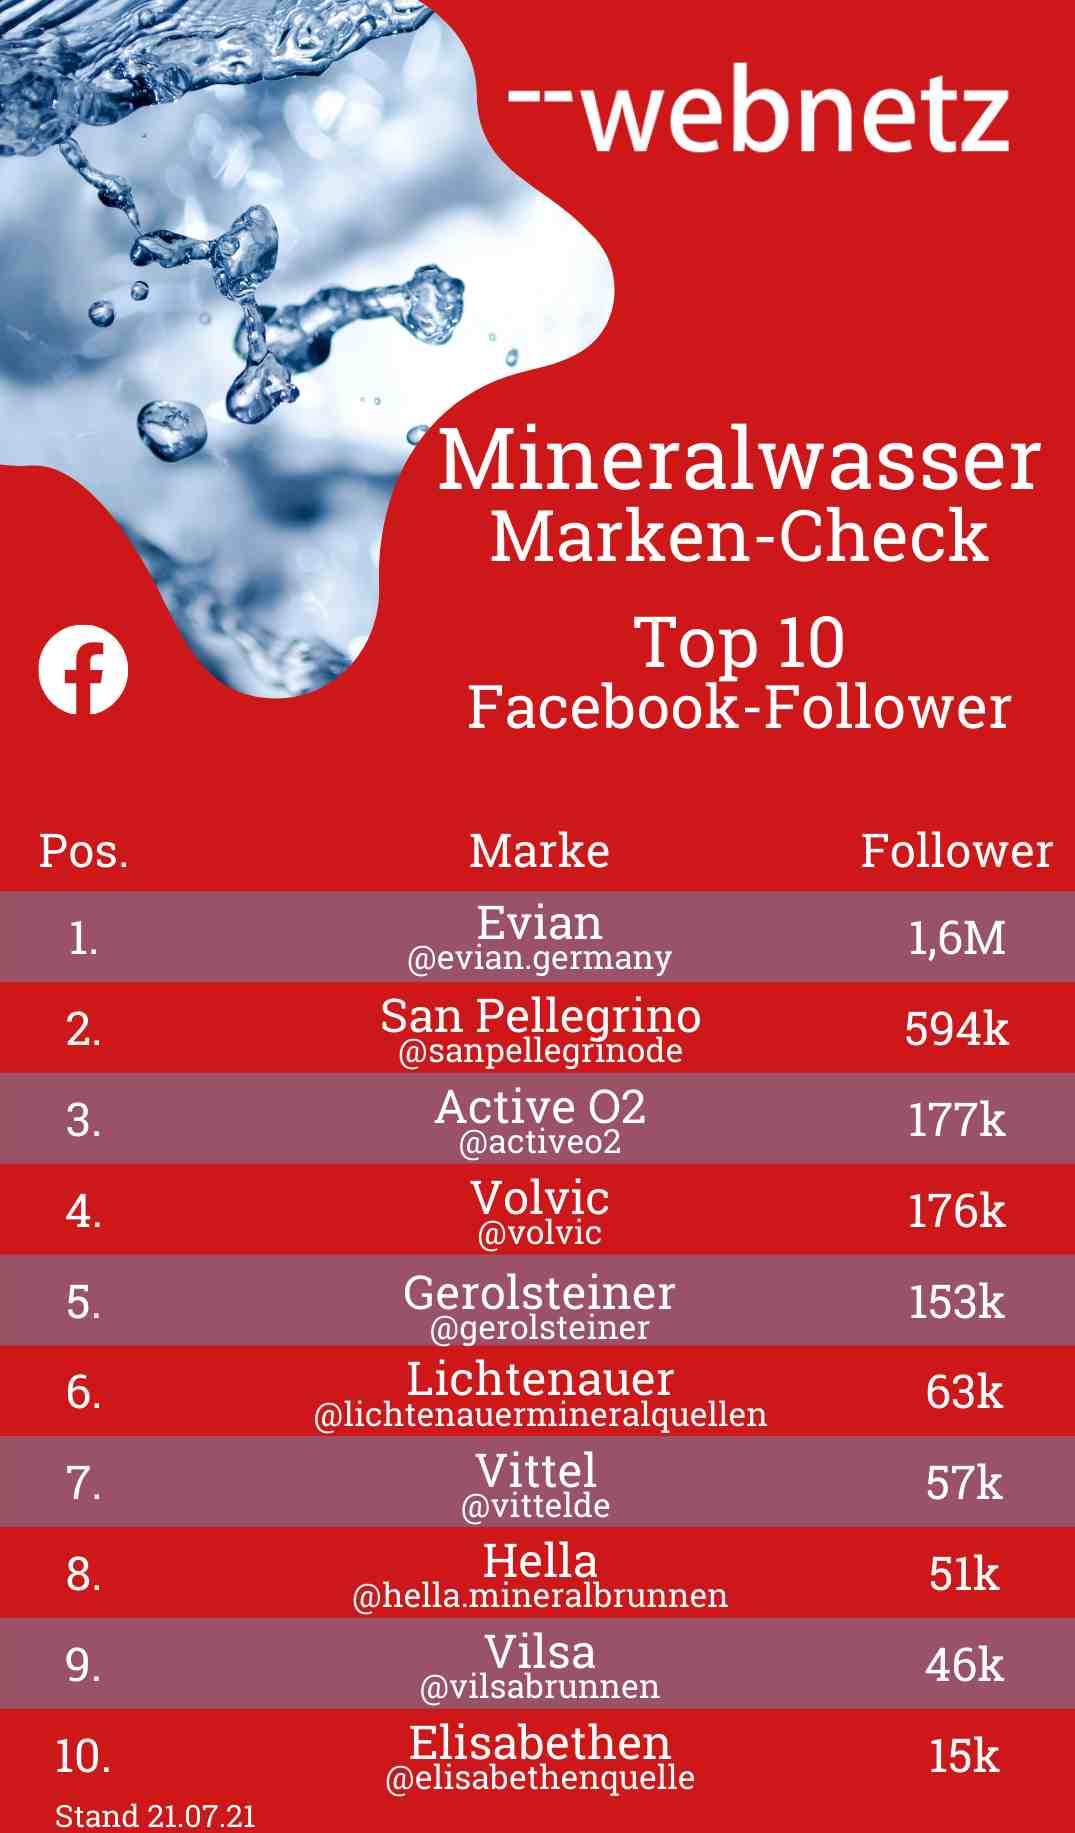 Mineralwasser-Marken Top 10 Facebook-Follower